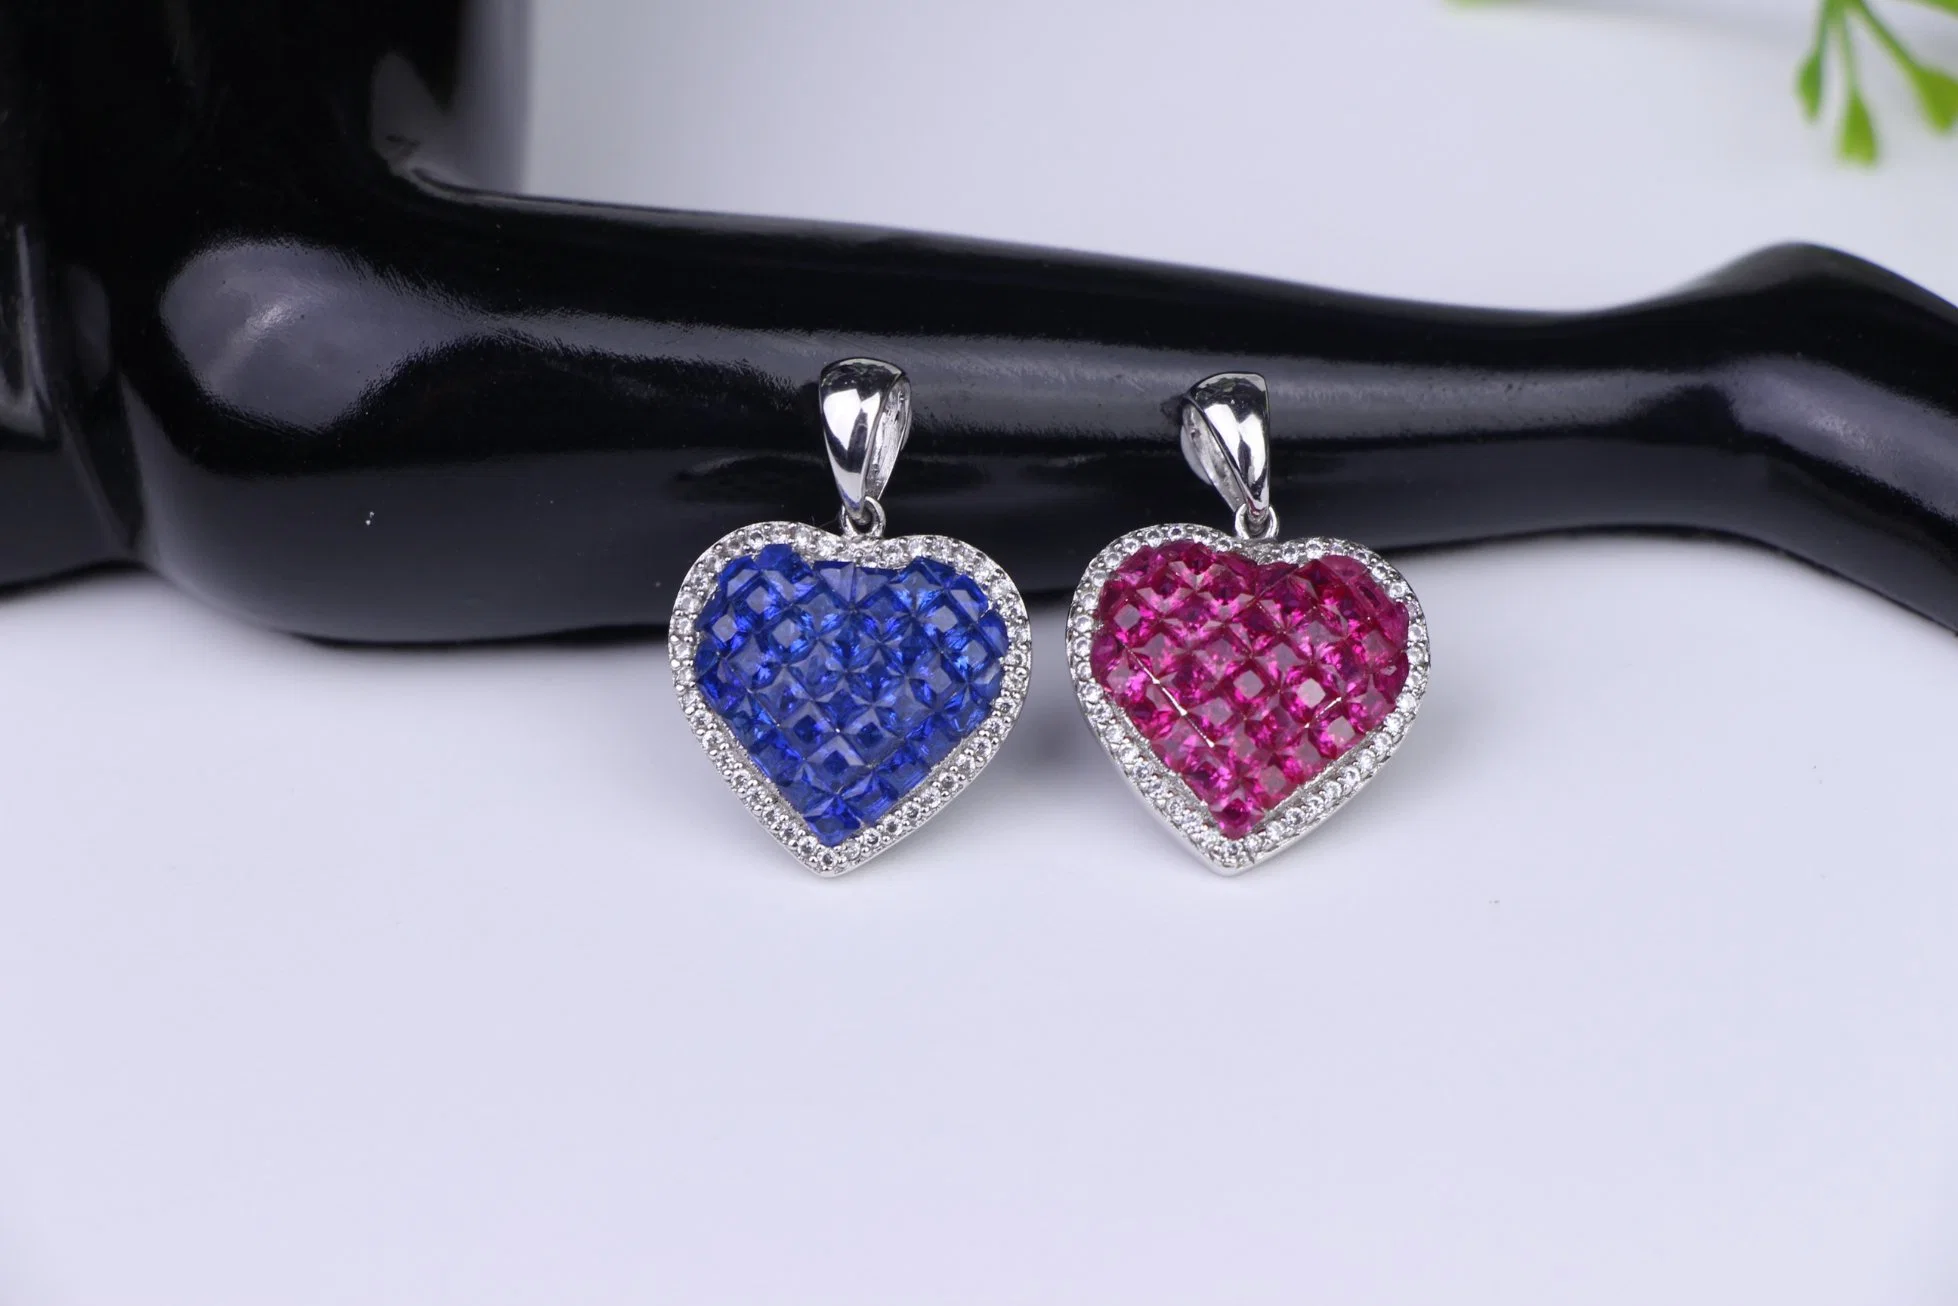 Luxury Jewelry 925 Sterling Silver Cubic Zirconia Heart Shape Ring Earrings Necklace Jewelry Set